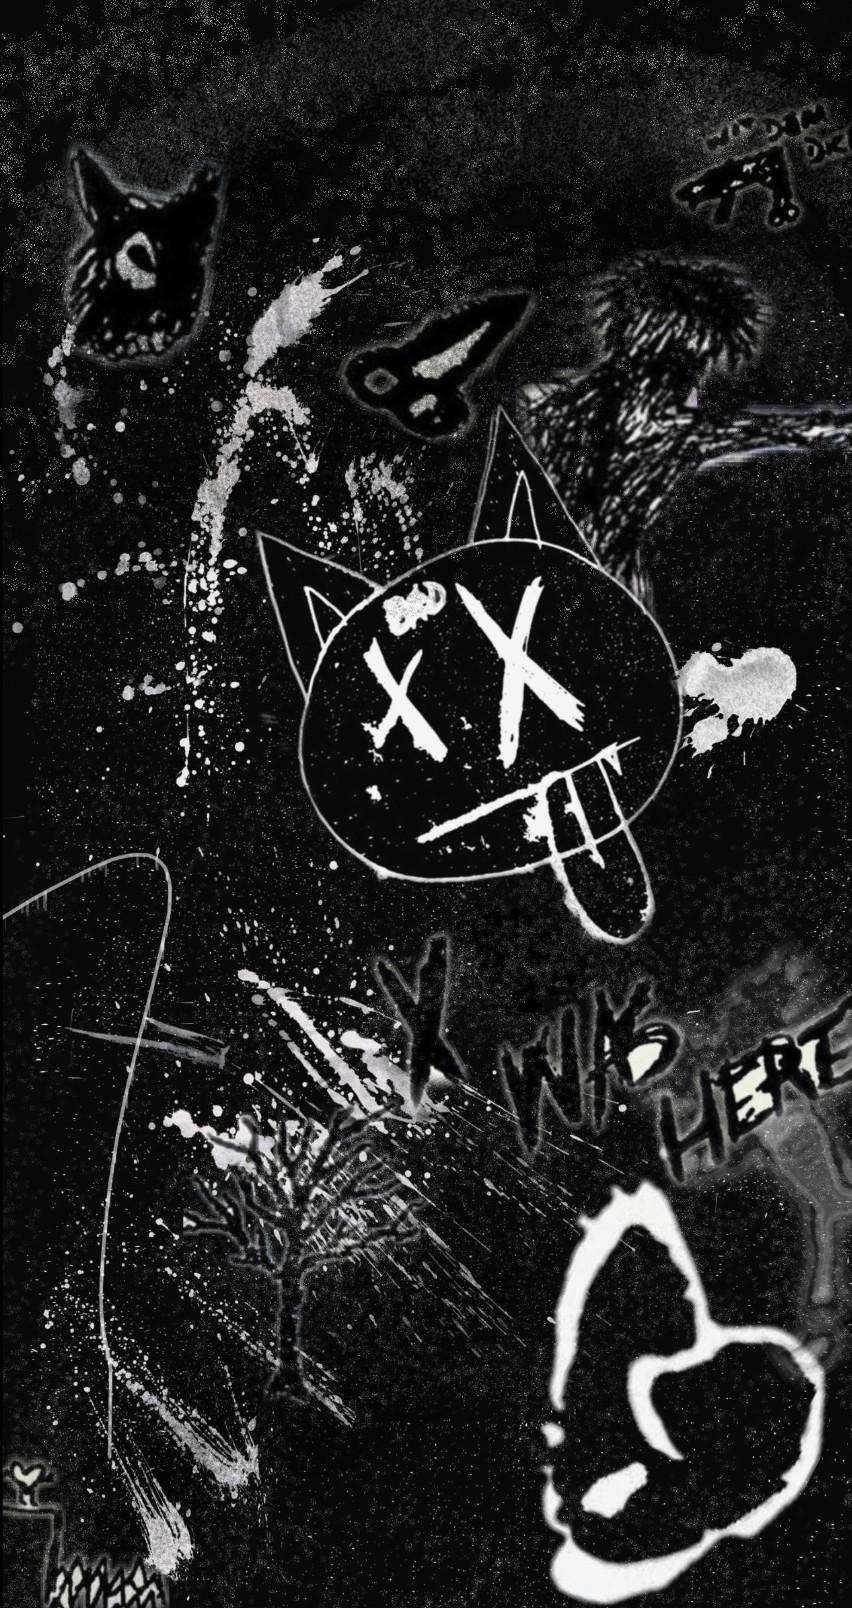 XXXTentacion Wallpaper